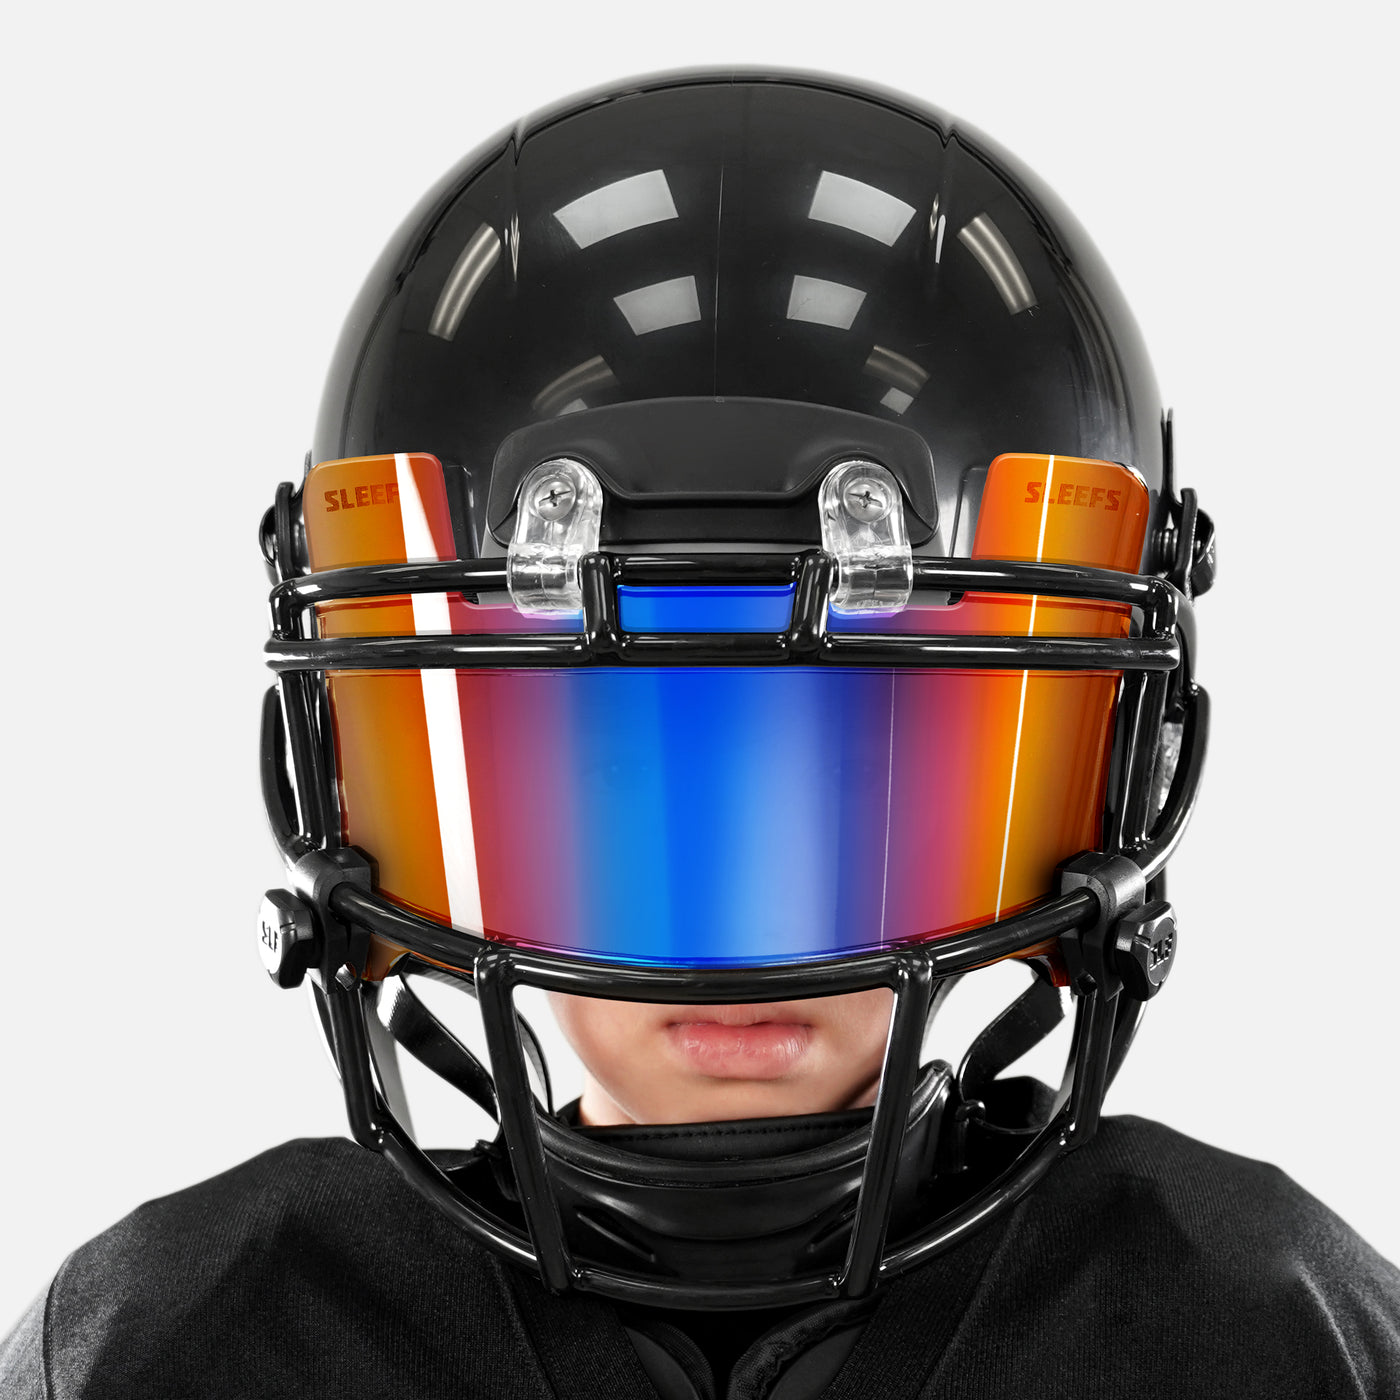 Fire & Ice Orange Clear Helmet Eye-Shield Visor for Kids